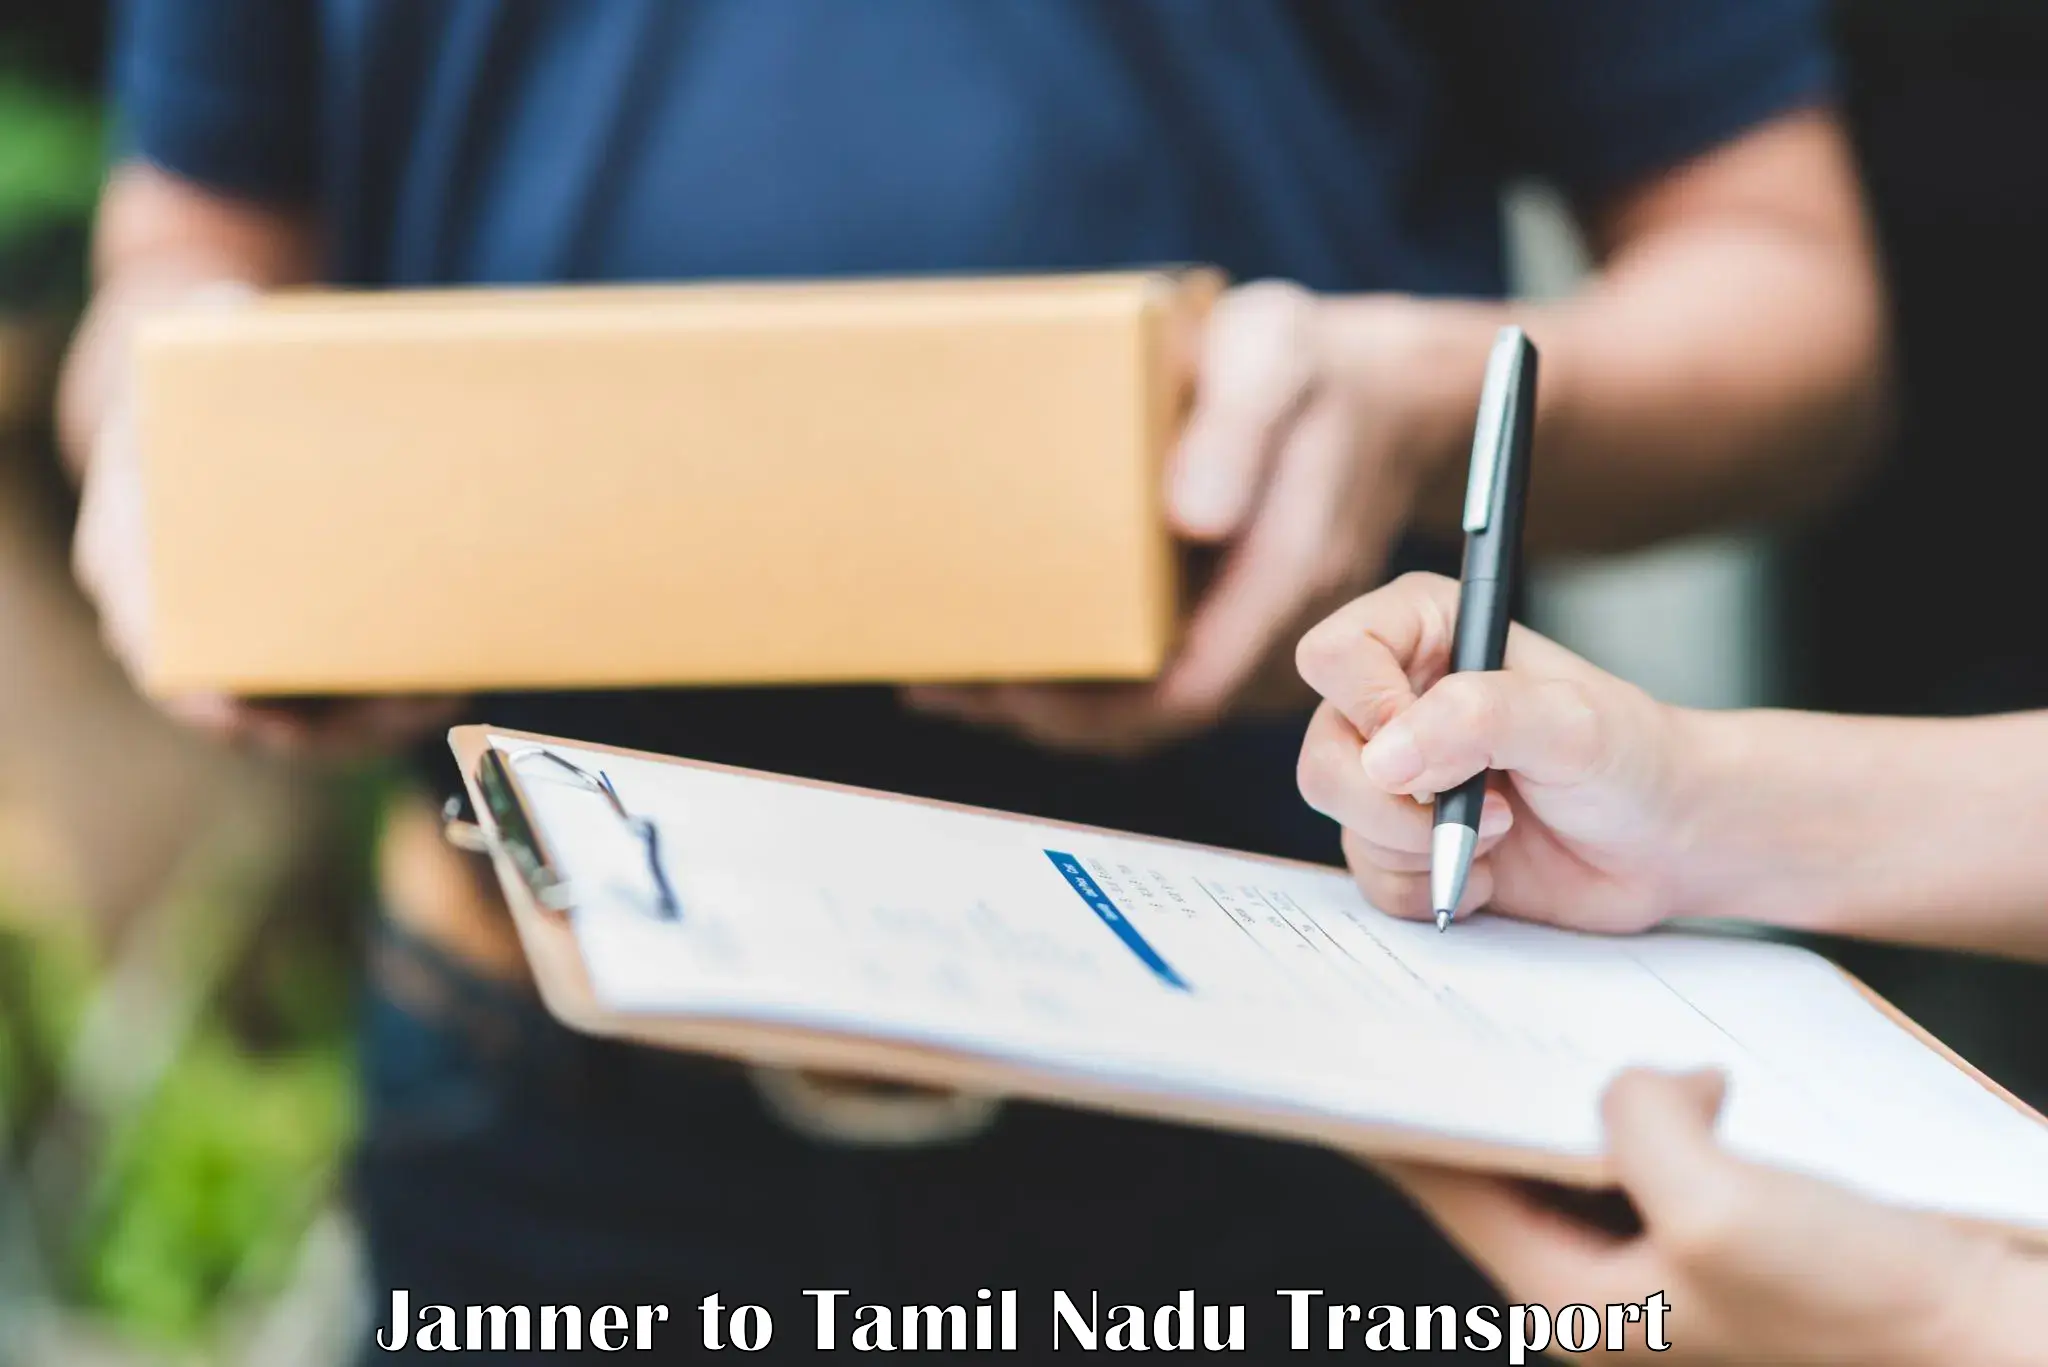 Truck transport companies in India Jamner to Periyakulam